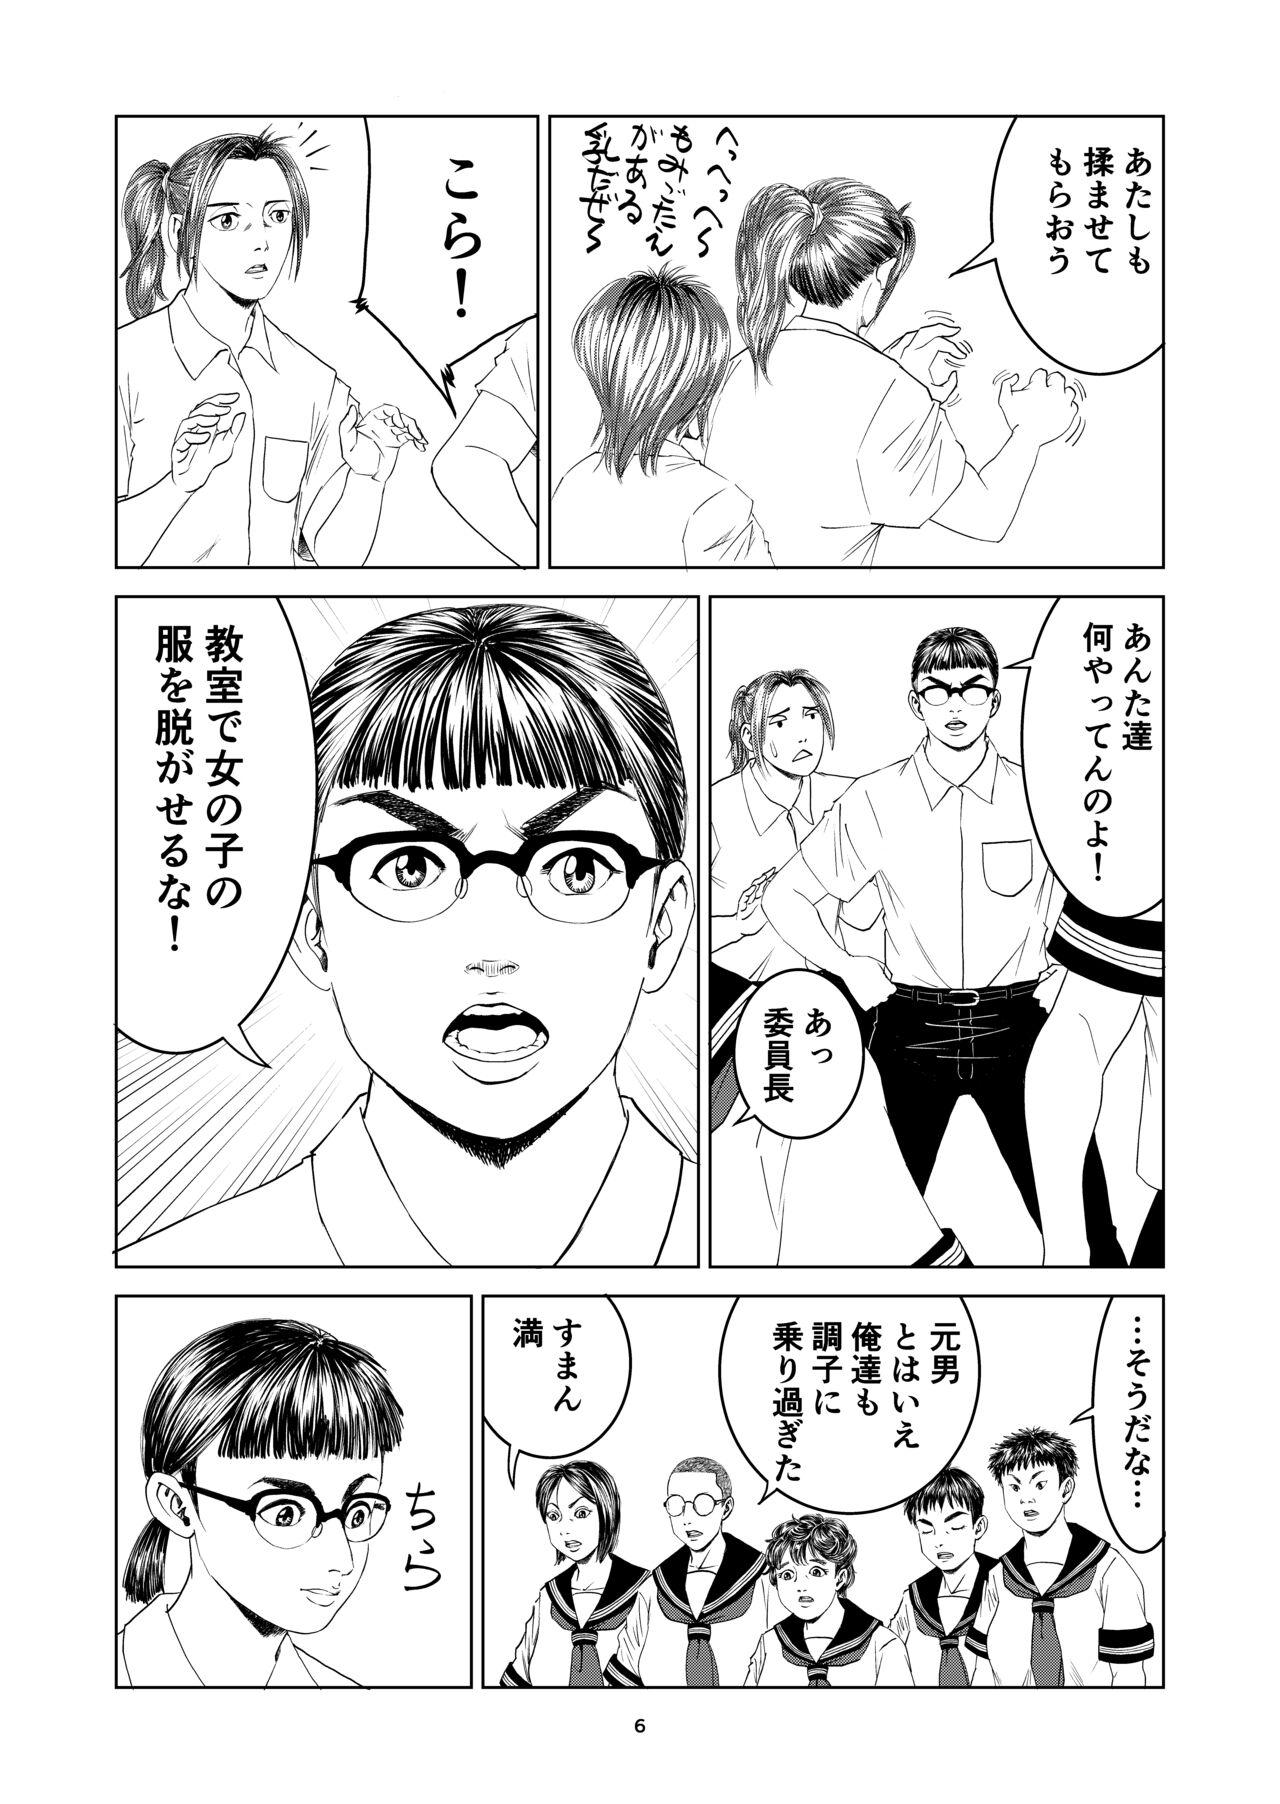 Room Atarashii Seikyouiku 8 - Original Hard Core Porn - Page 6